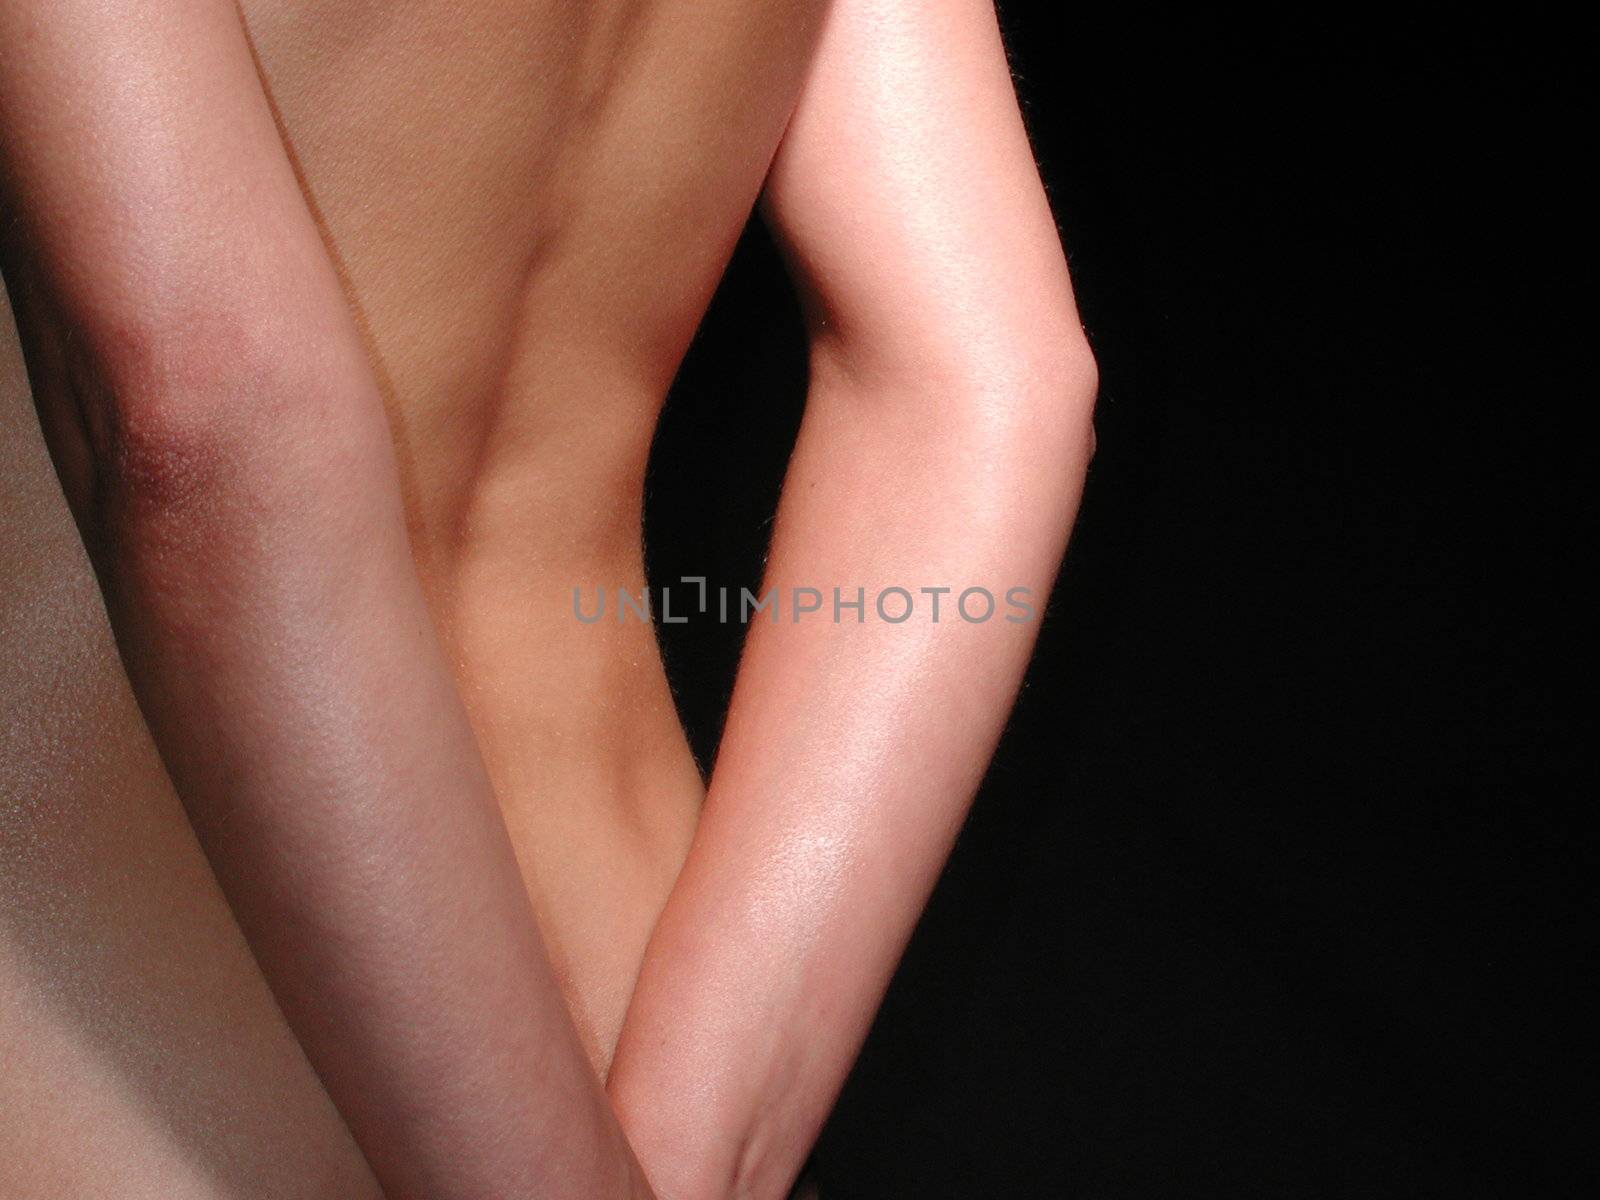 ein sch�ner R�cken | a beautiful back by fotofritz